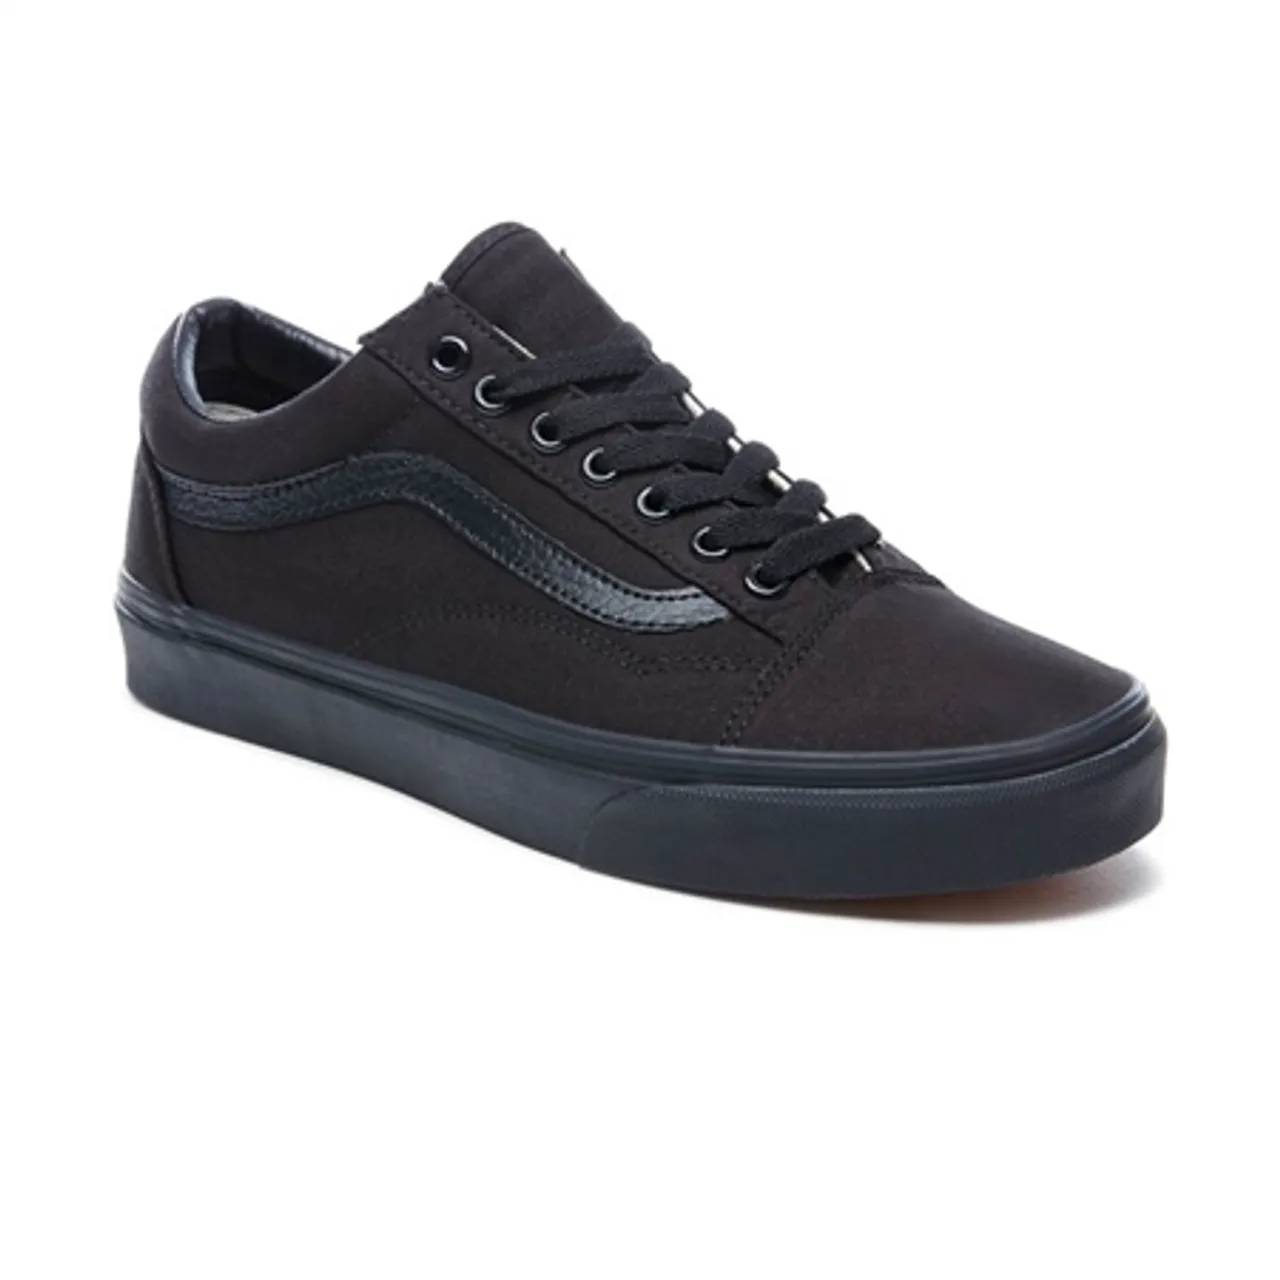 Vans Old Skool Shoes - Black - UK 8 (EU 42)